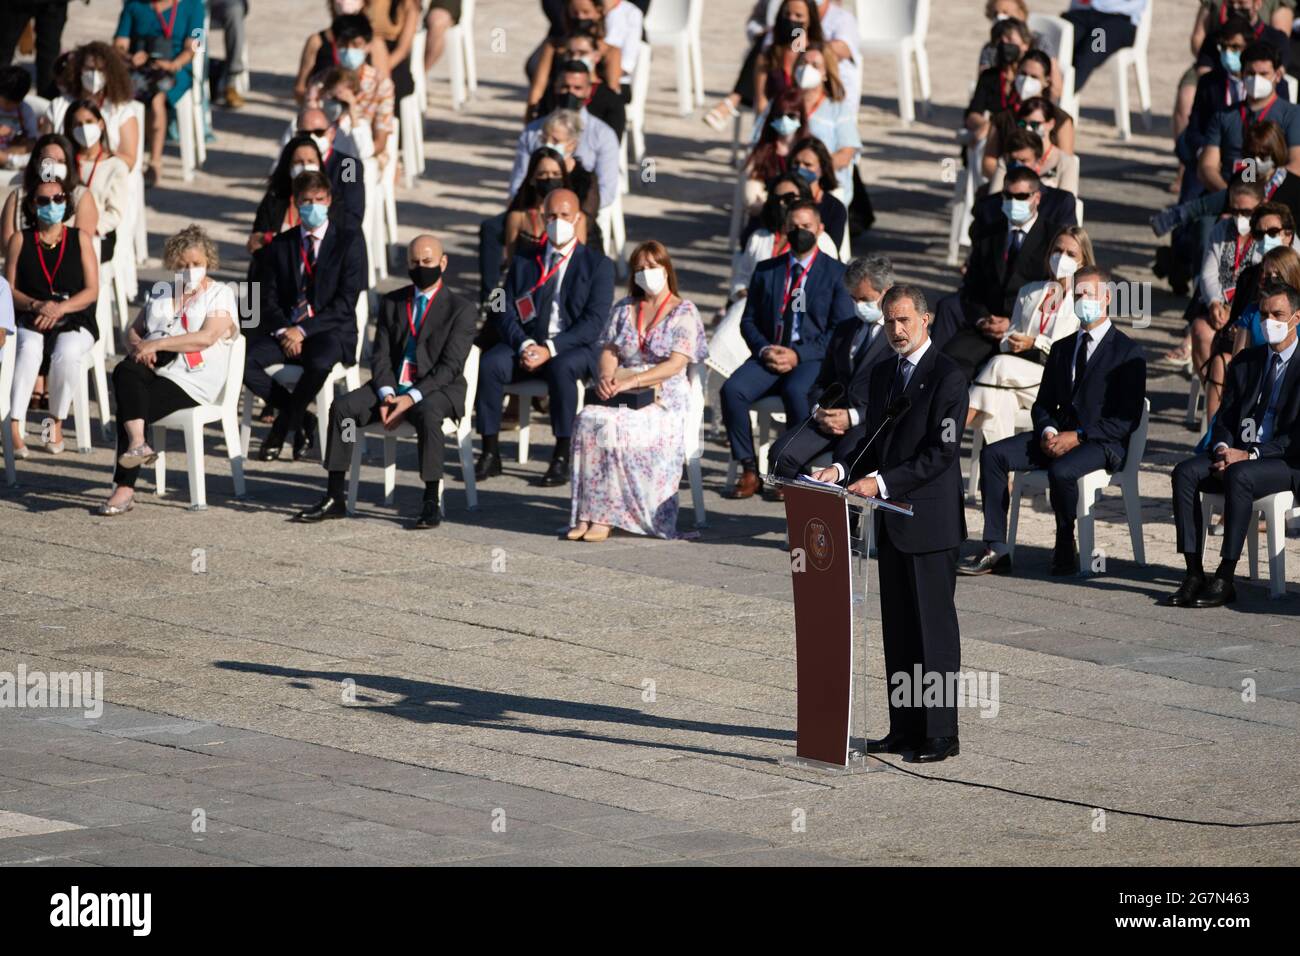 (210715) -- MADRID, 15. Juli 2021 (Xinhua) -- König von Spanien, der spanische König, hält eine Rede während des Gedenkdienstes für Coronavirus-Opfer im Königlichen Palast in Madrid, Spanien, am 15. Juli 2021. Spanien hielt hier im Königspalast am Donnerstagmorgen einen Gedenkdienst für die 81,043 Menschen ab, die ihr Leben durch das Coronavirus verloren haben. Die Familienmitglieder von 102 Gesundheitshelfern, die ihr Leben an COVID-19 in Spanien verloren, nahmen ebenfalls an dem Gottesdienst Teil, wo sie Medaillen erhielten, um das Opfer ihrer Verwandten während der Pandemie zu würdigen. (Xinhua/Meng Dingbo) Stockfoto